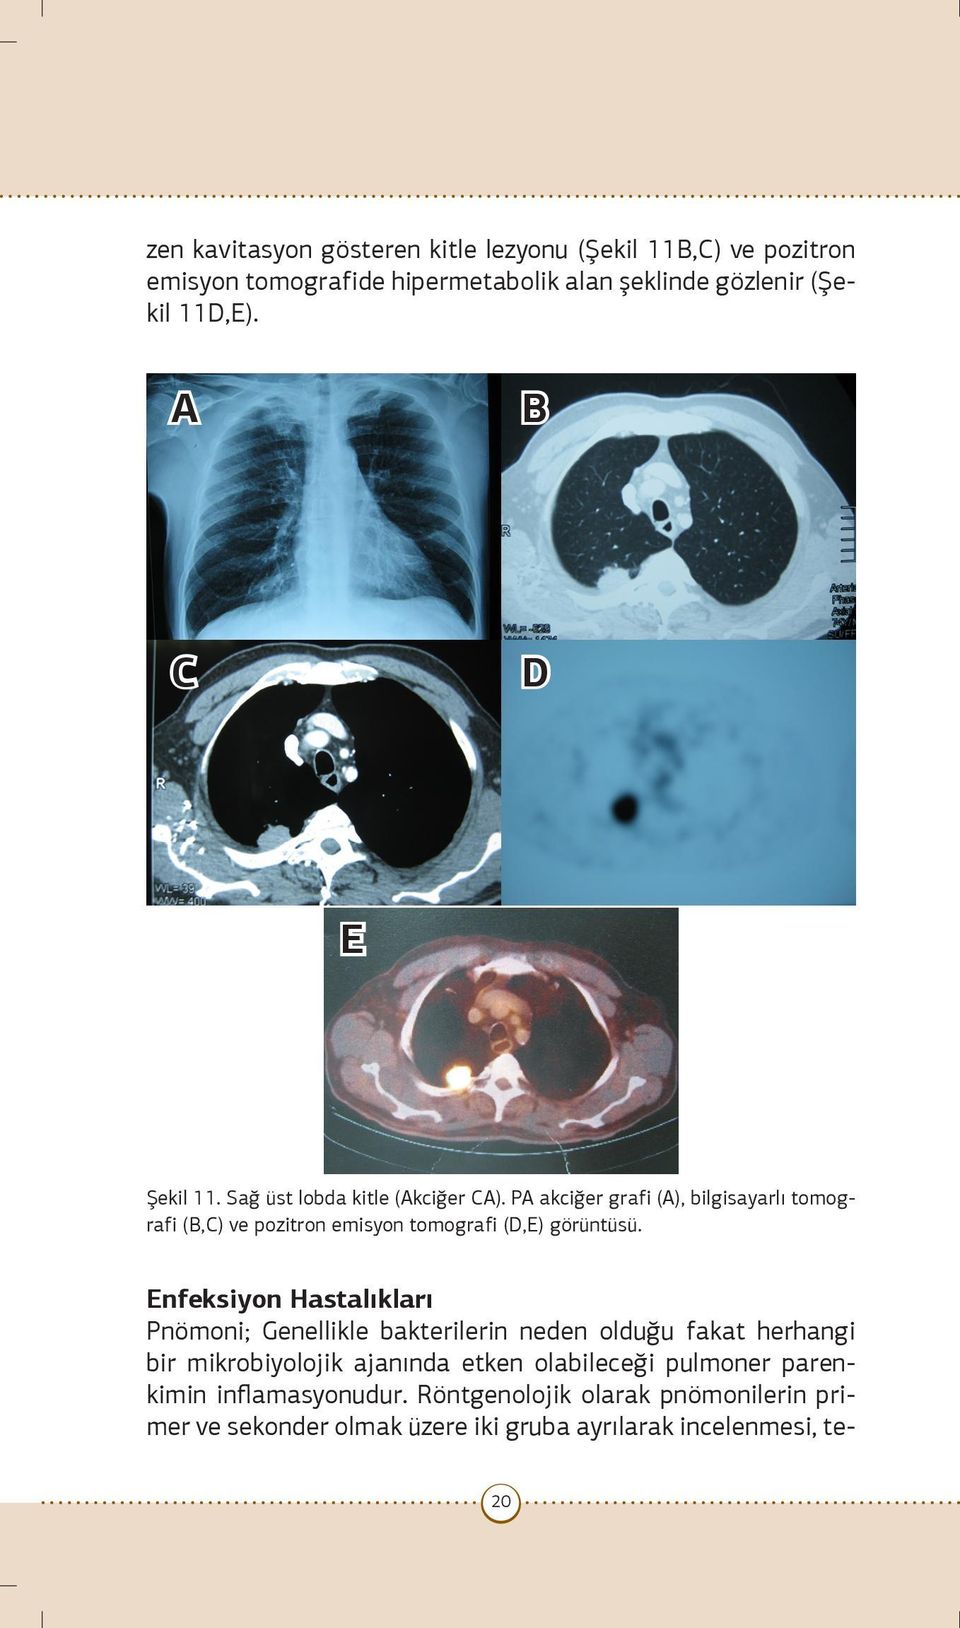 PA akciğer grafi (A), bilgisayarlı tomografi (B,C) ve pozitron emisyon tomografi (D,E) görüntüsü.